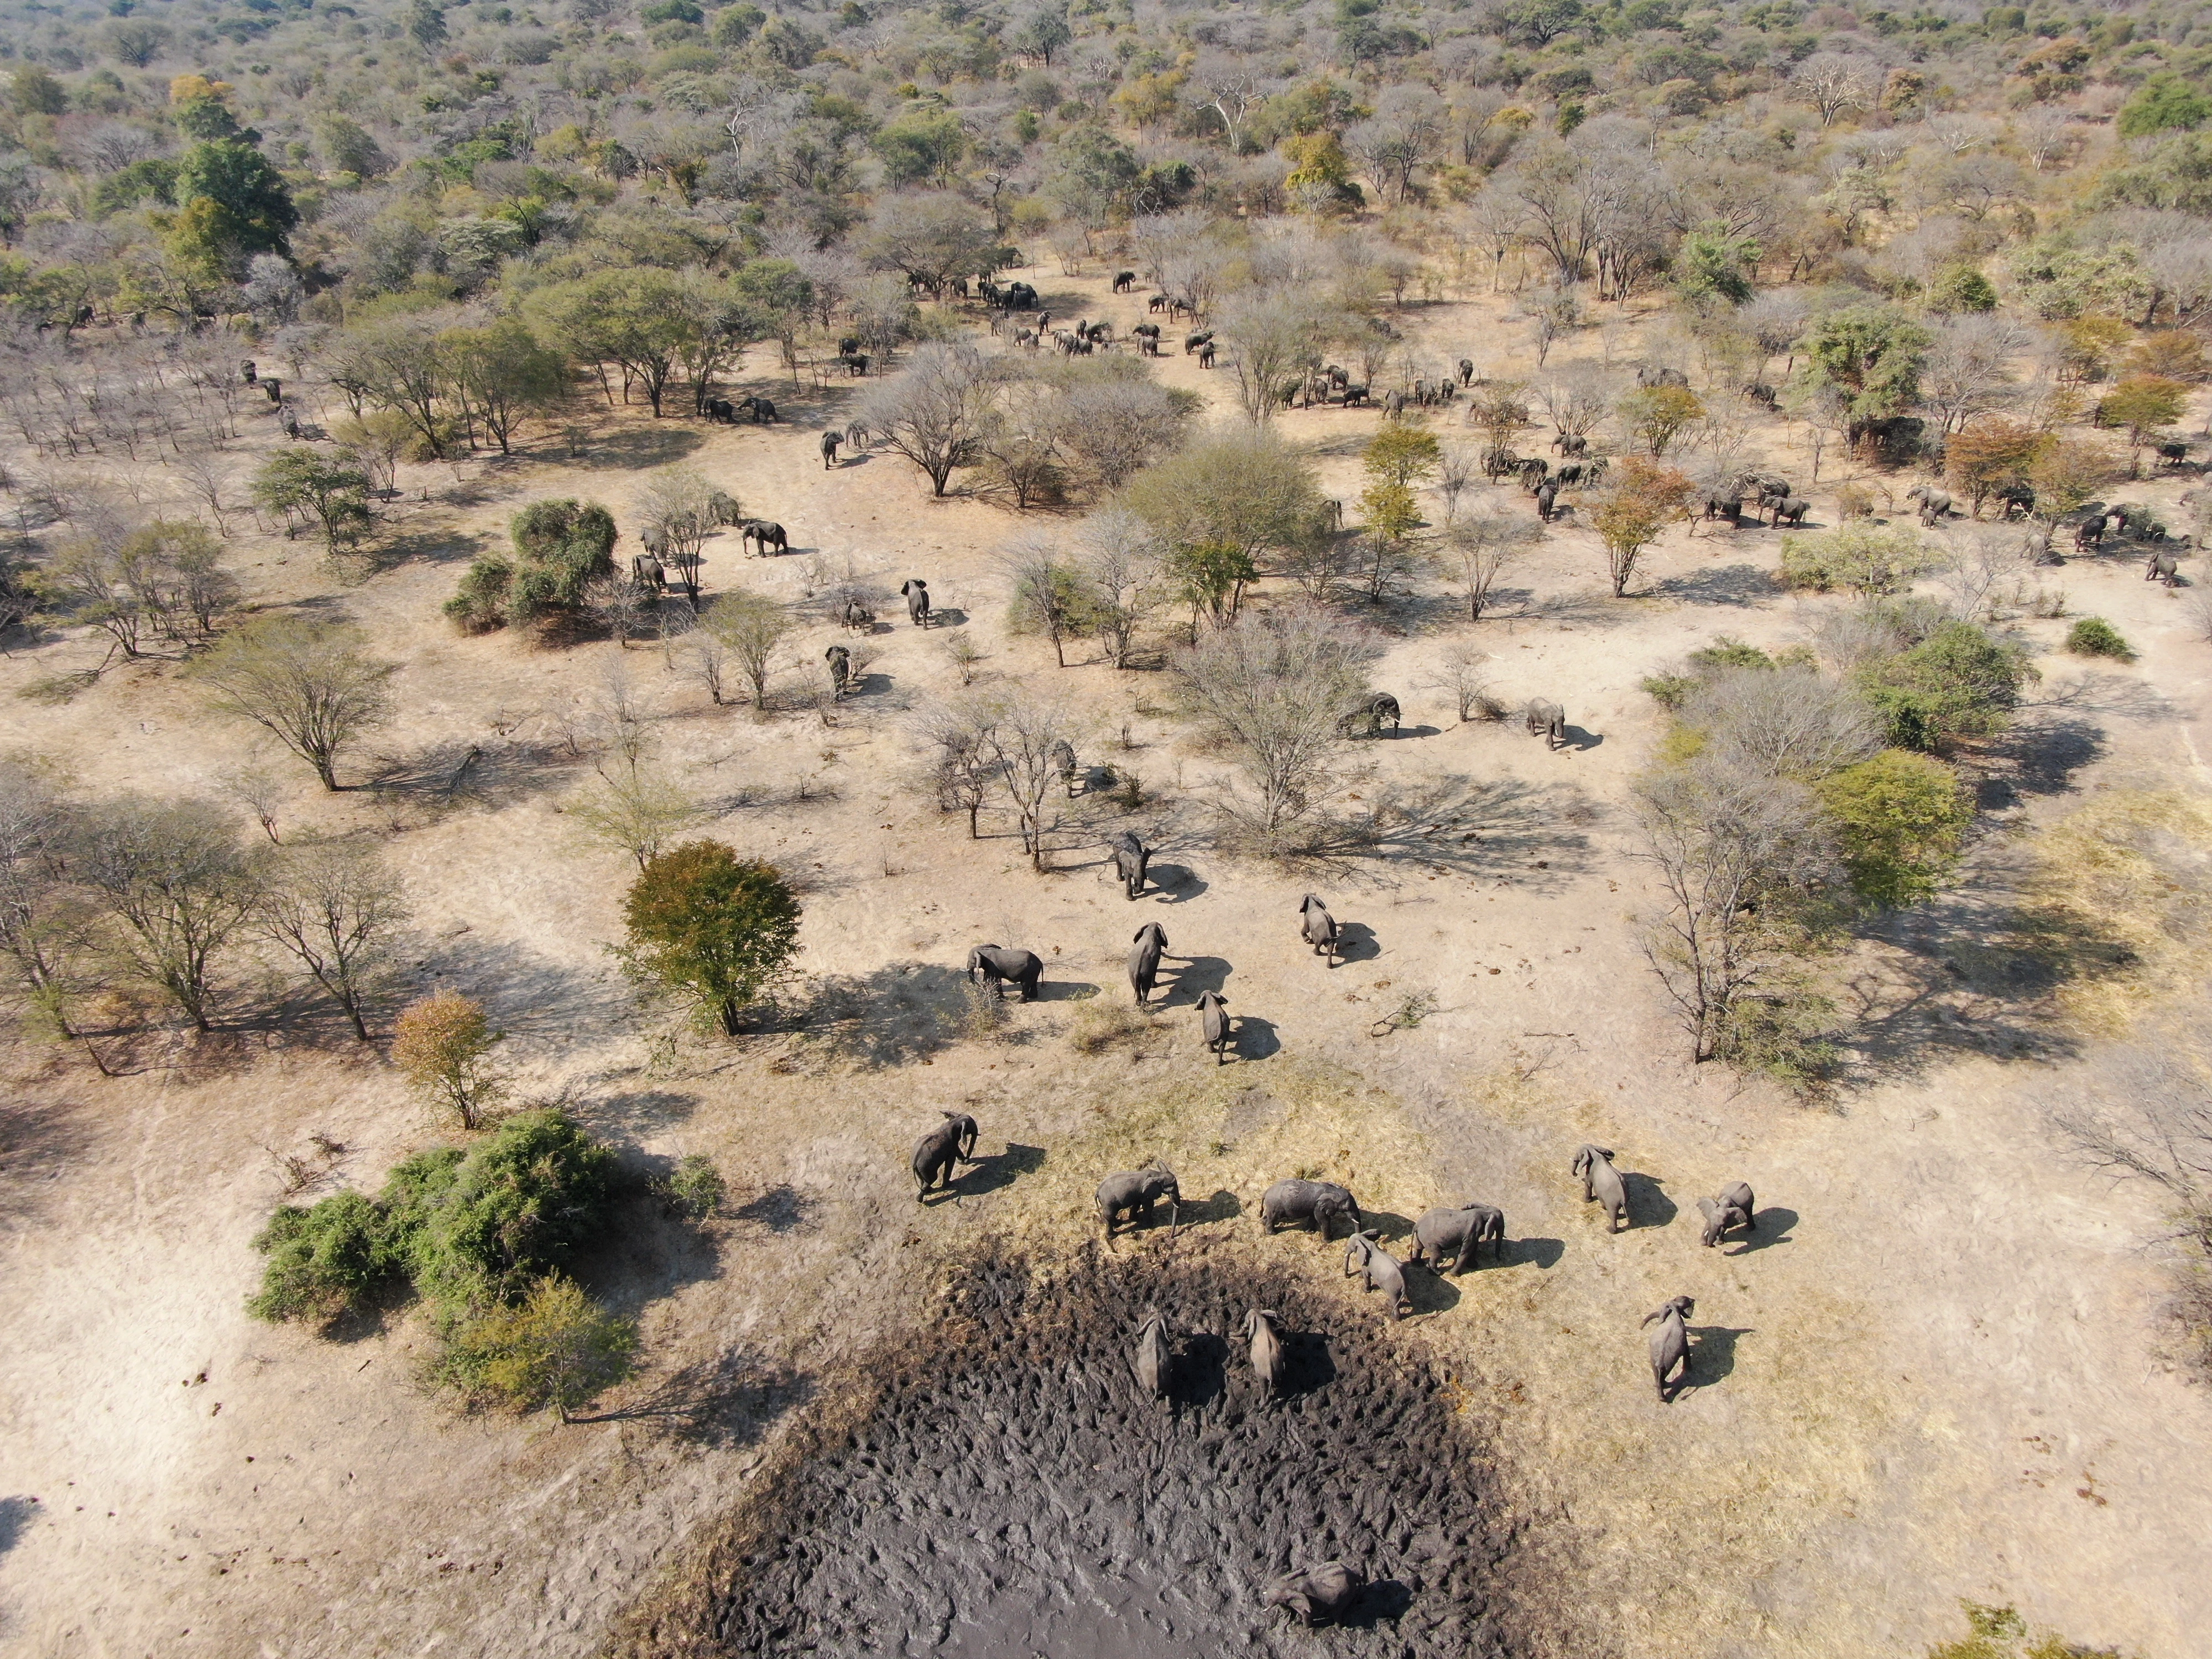 Olifanten in Sioma Ngwezi